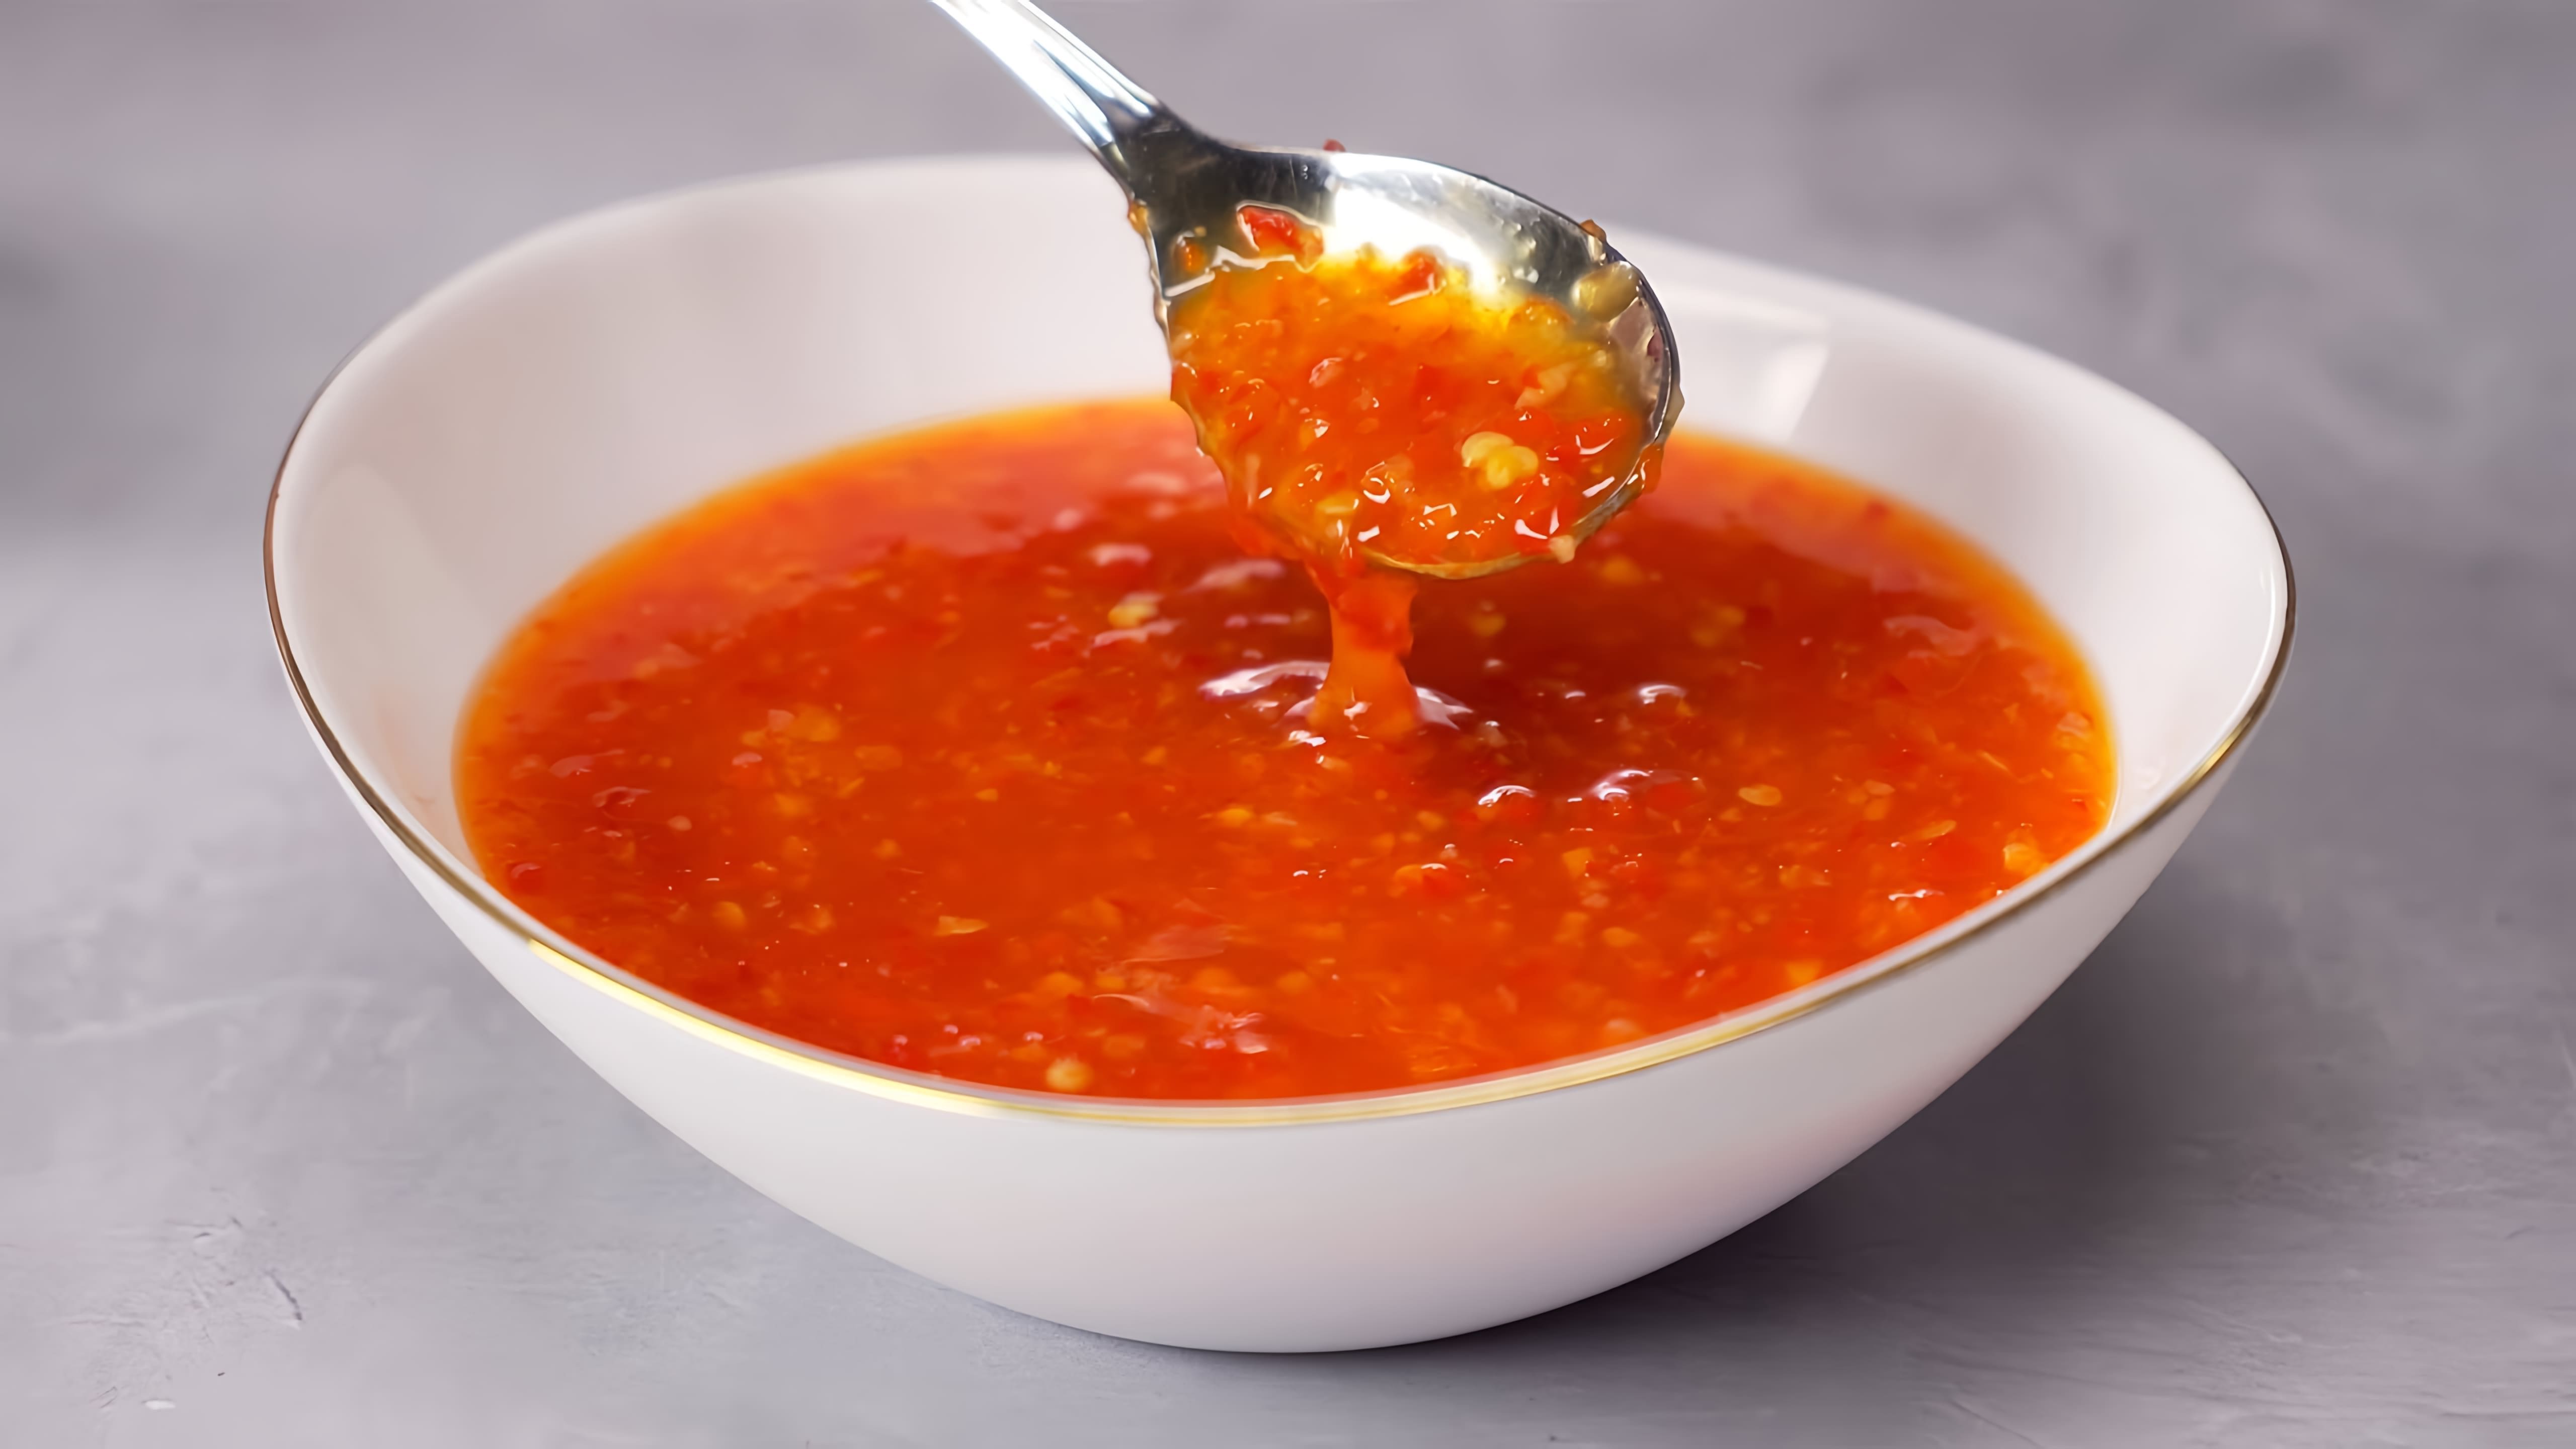 В данном видео демонстрируется рецепт приготовления кисло-сладкого соуса